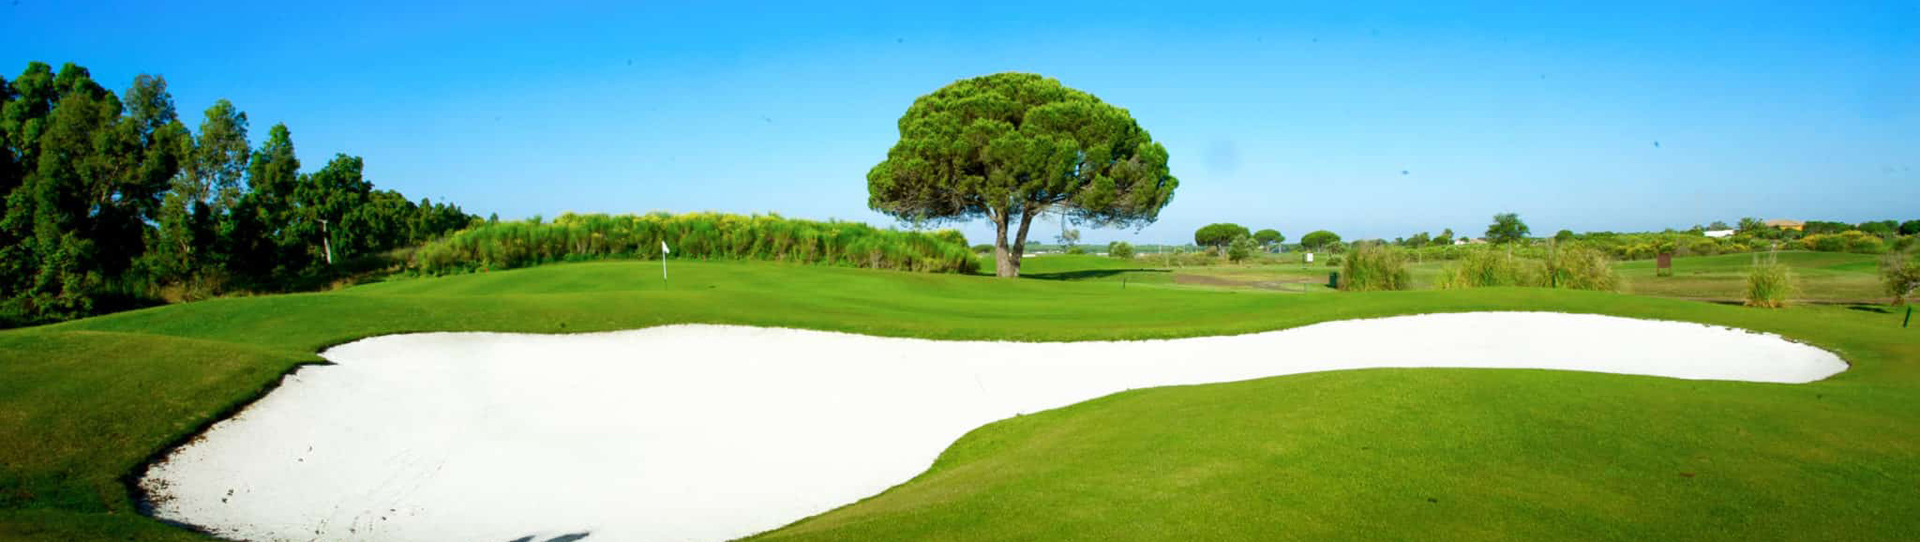 Spain golf holidays - Bahia de Cadiz Package - Photo 2